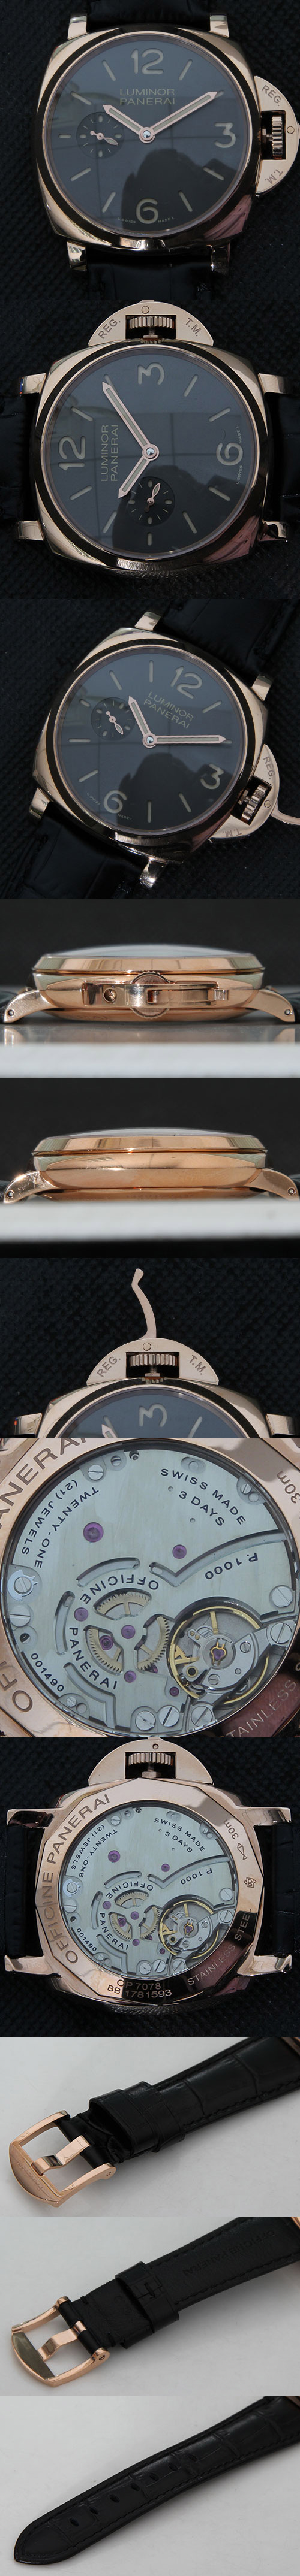 【ショップレビュー大歓迎】パネライ ルミノール 1950 3デイズ PAM00677スーパーコピー時計